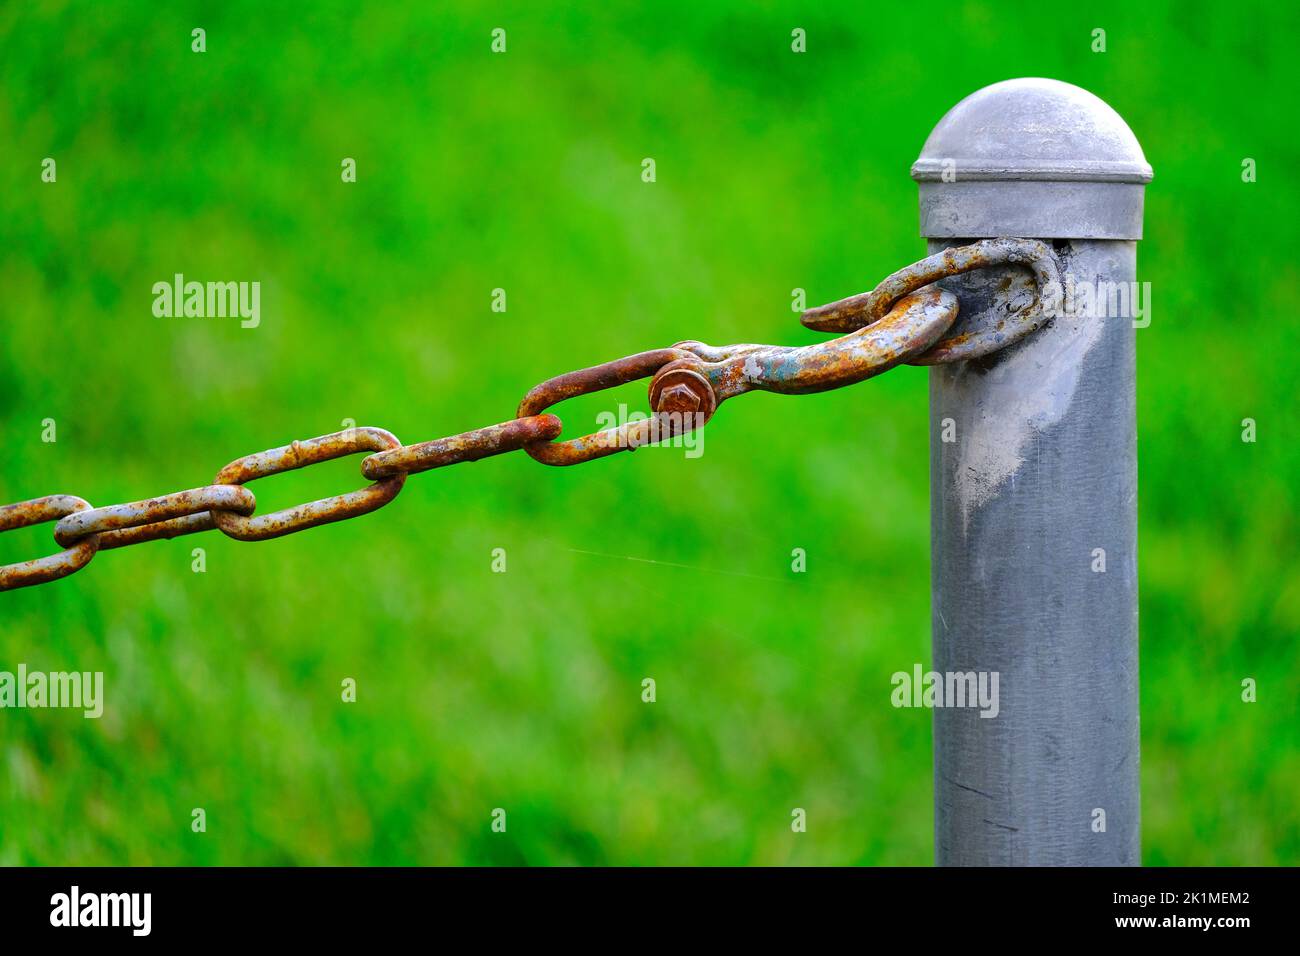 Detalle de la cadena conectada al poste para seguridad y protección de fondo verde Foto de stock